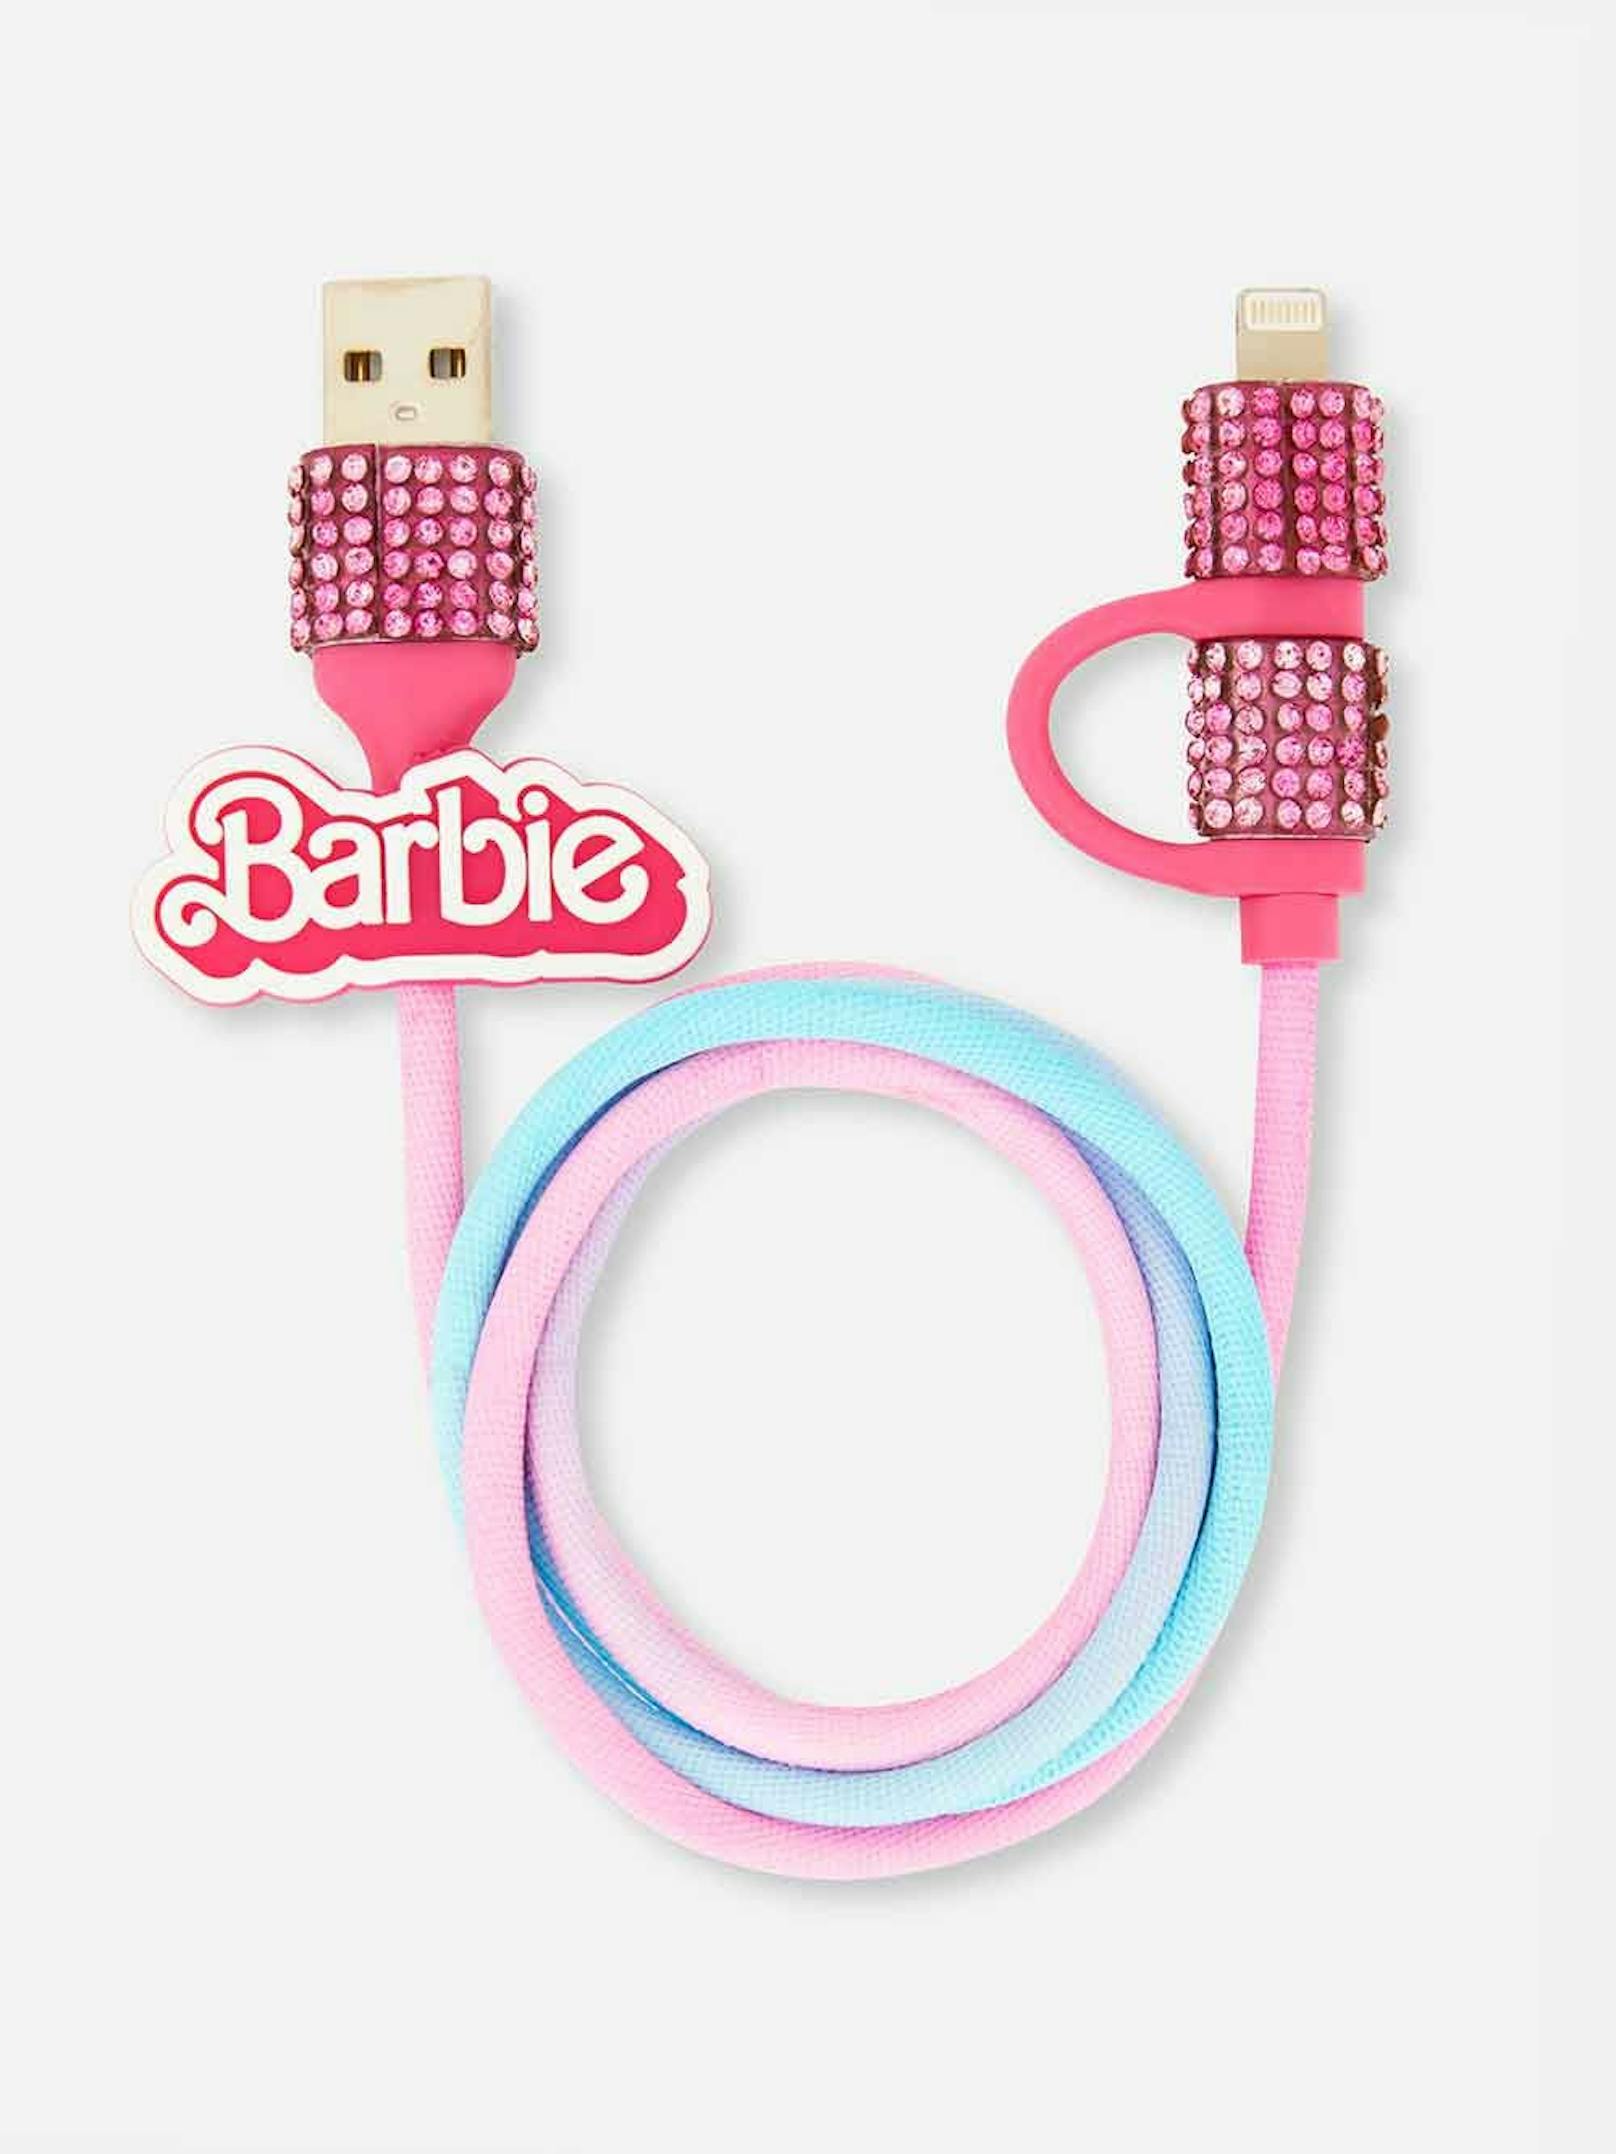 Sogar das Ladekabel wird quietschrosa und mit Kristallen besetzt Dank Primark und seiner Merchandise-Kollektion für "<a data-li-document-ref="100275744" href="https://www.heute.at/g/-100275744">Barbie</a> - The Movie".